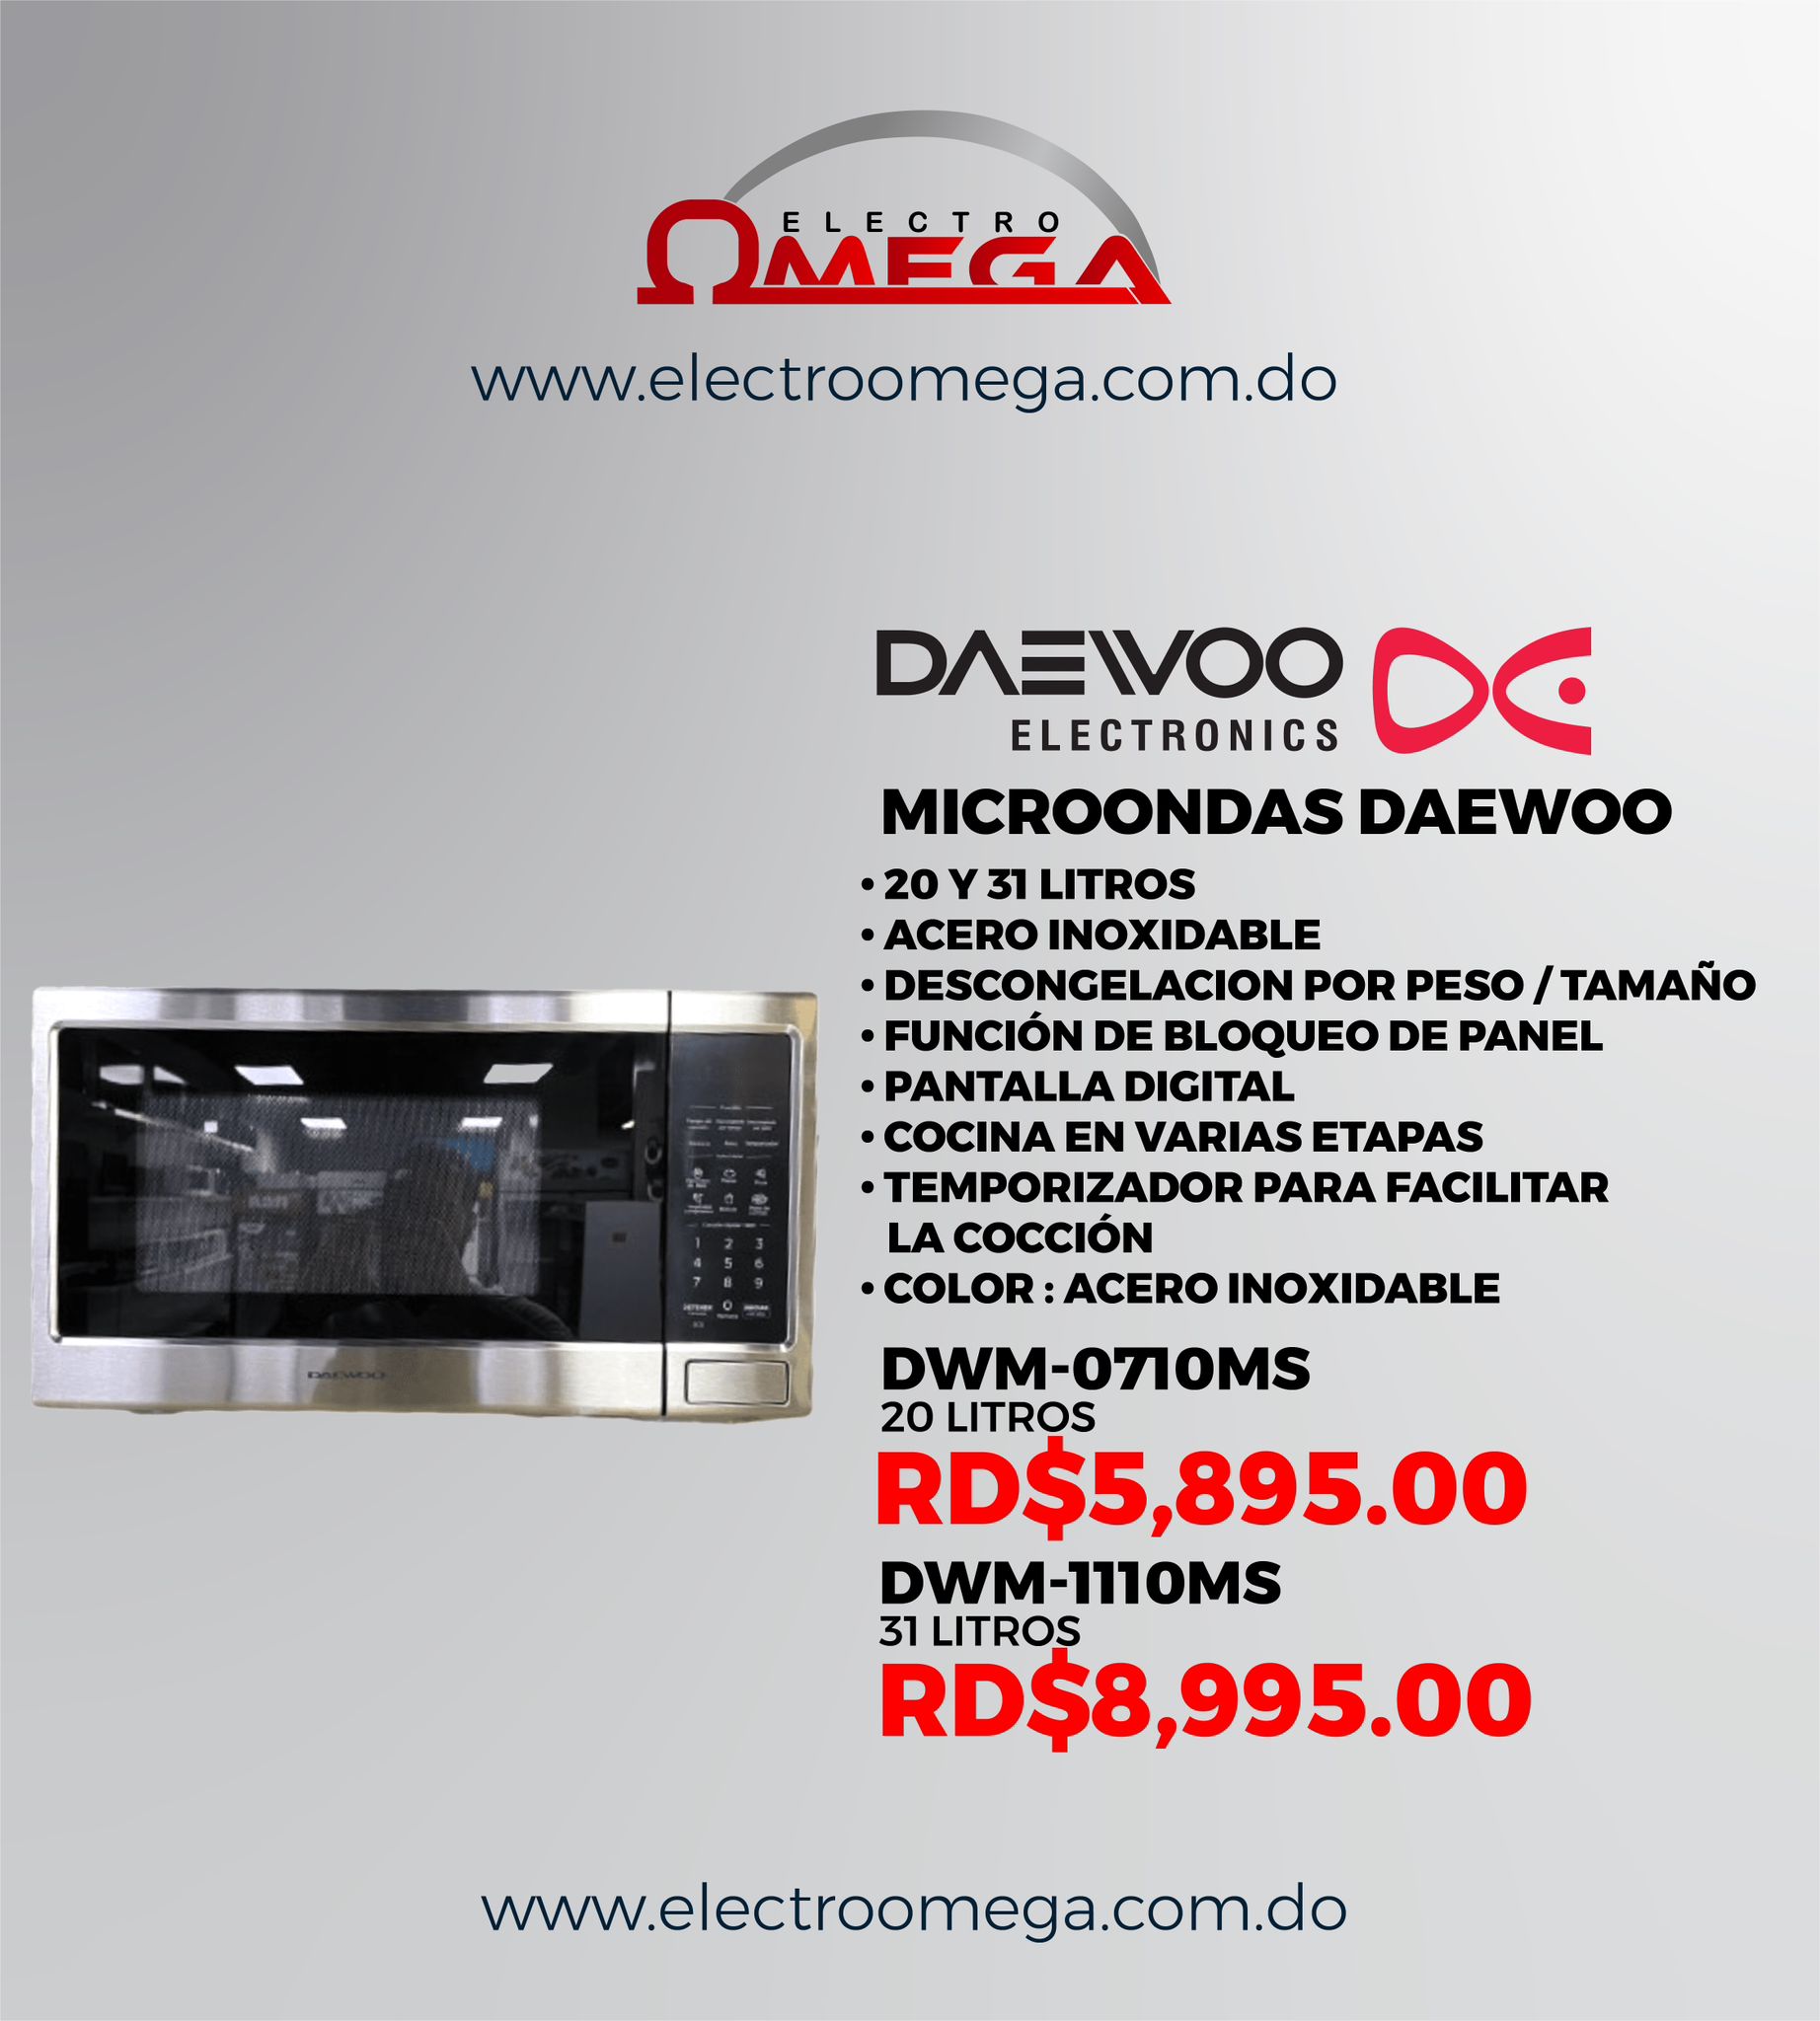 Neveras  Electro Omega: Distribuidora y Tienda de Electrodomésticos